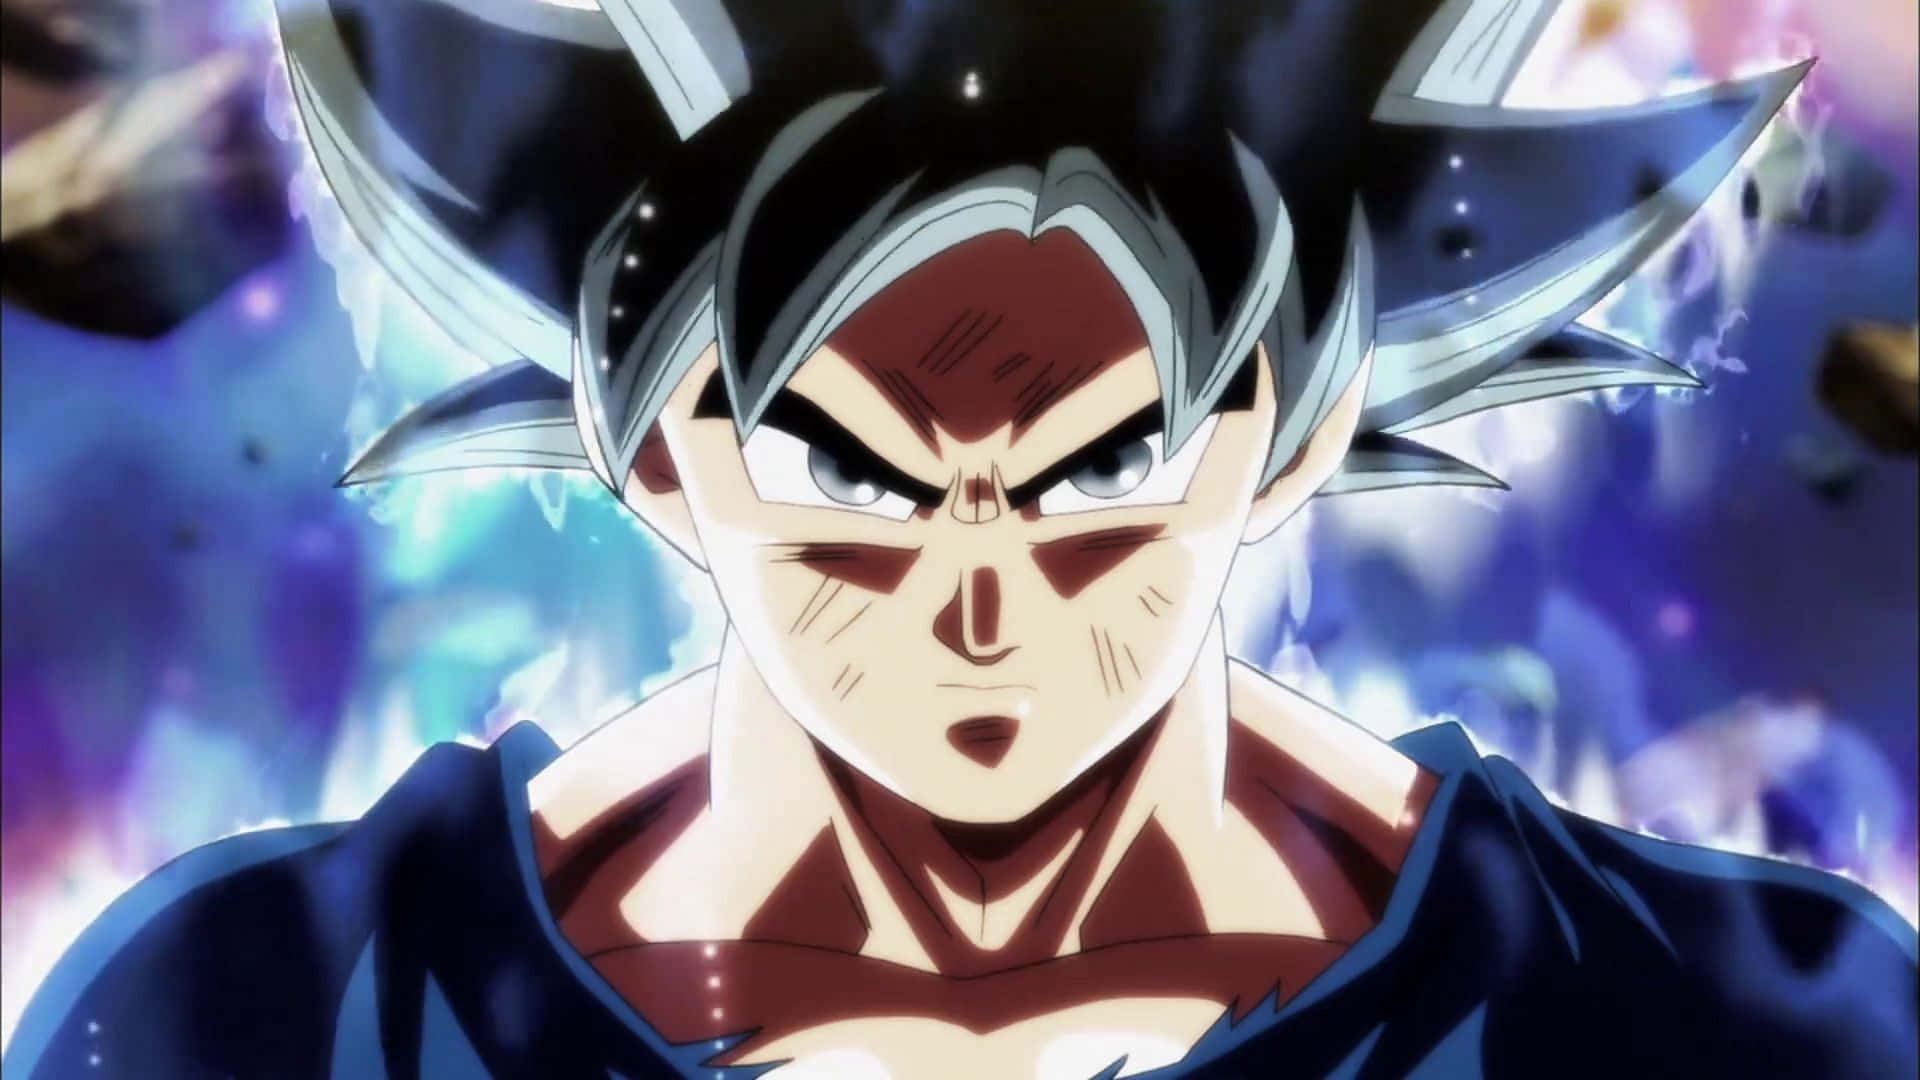 Gliocchi Di Goku Di Dragon Ball Super Si Trasformano In Argento Mentre Sblocca Il Potere Dell'ultra Istinto.